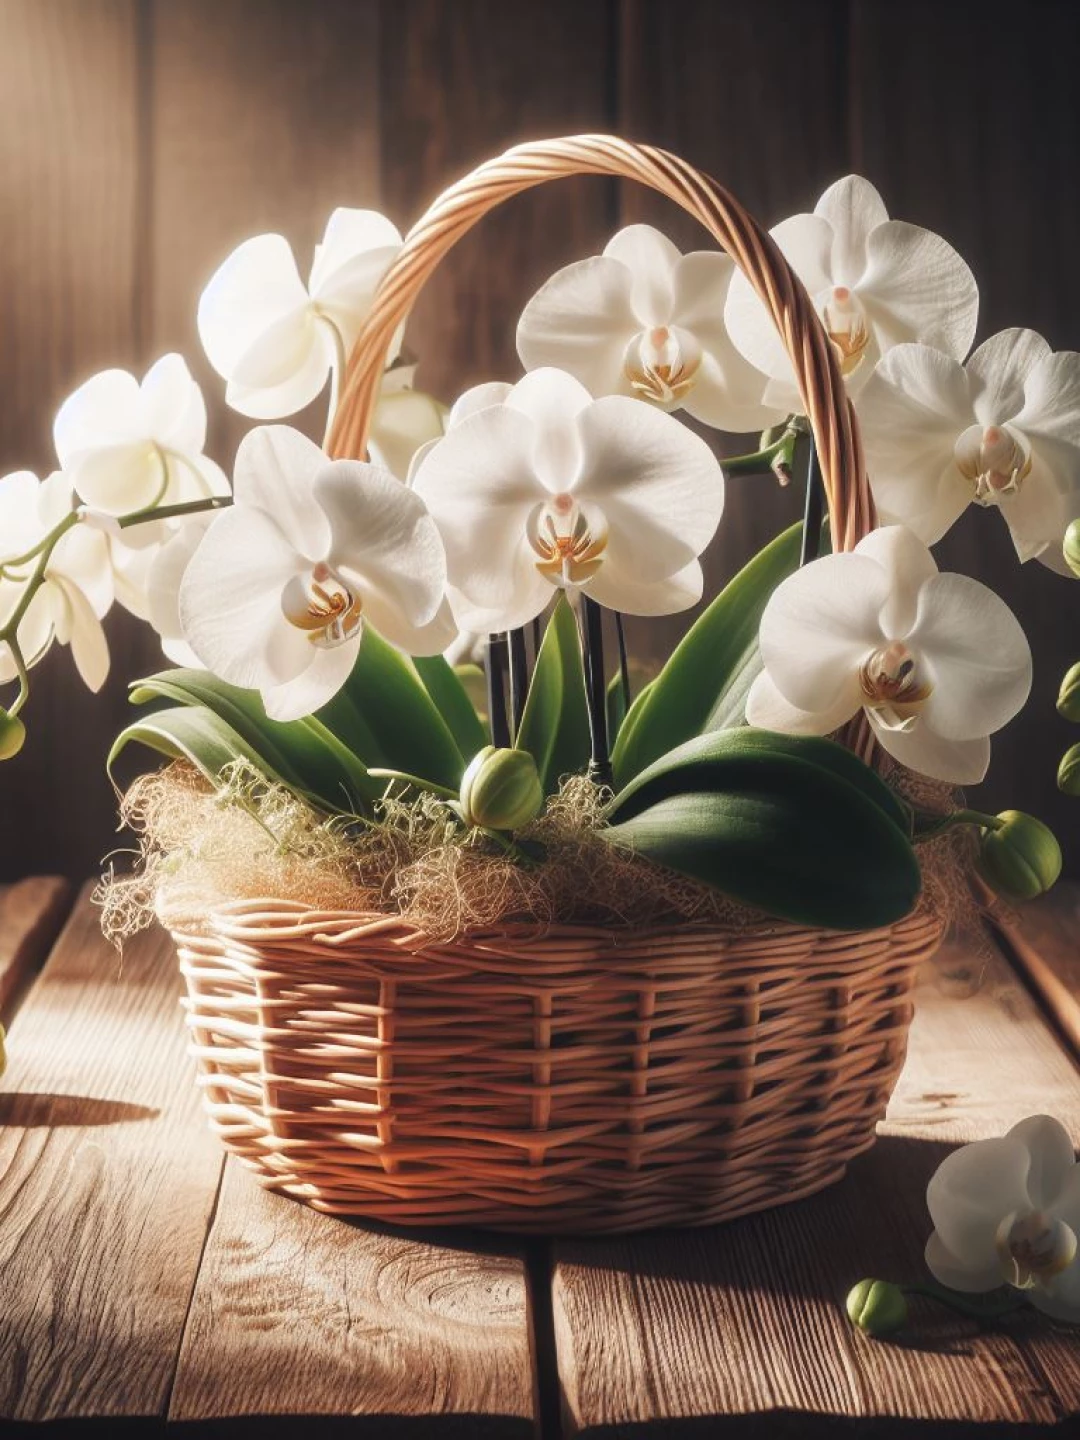 Os 7 Erros Mais Comuns ao Cultivar Orquídeas e Como Evitá-los